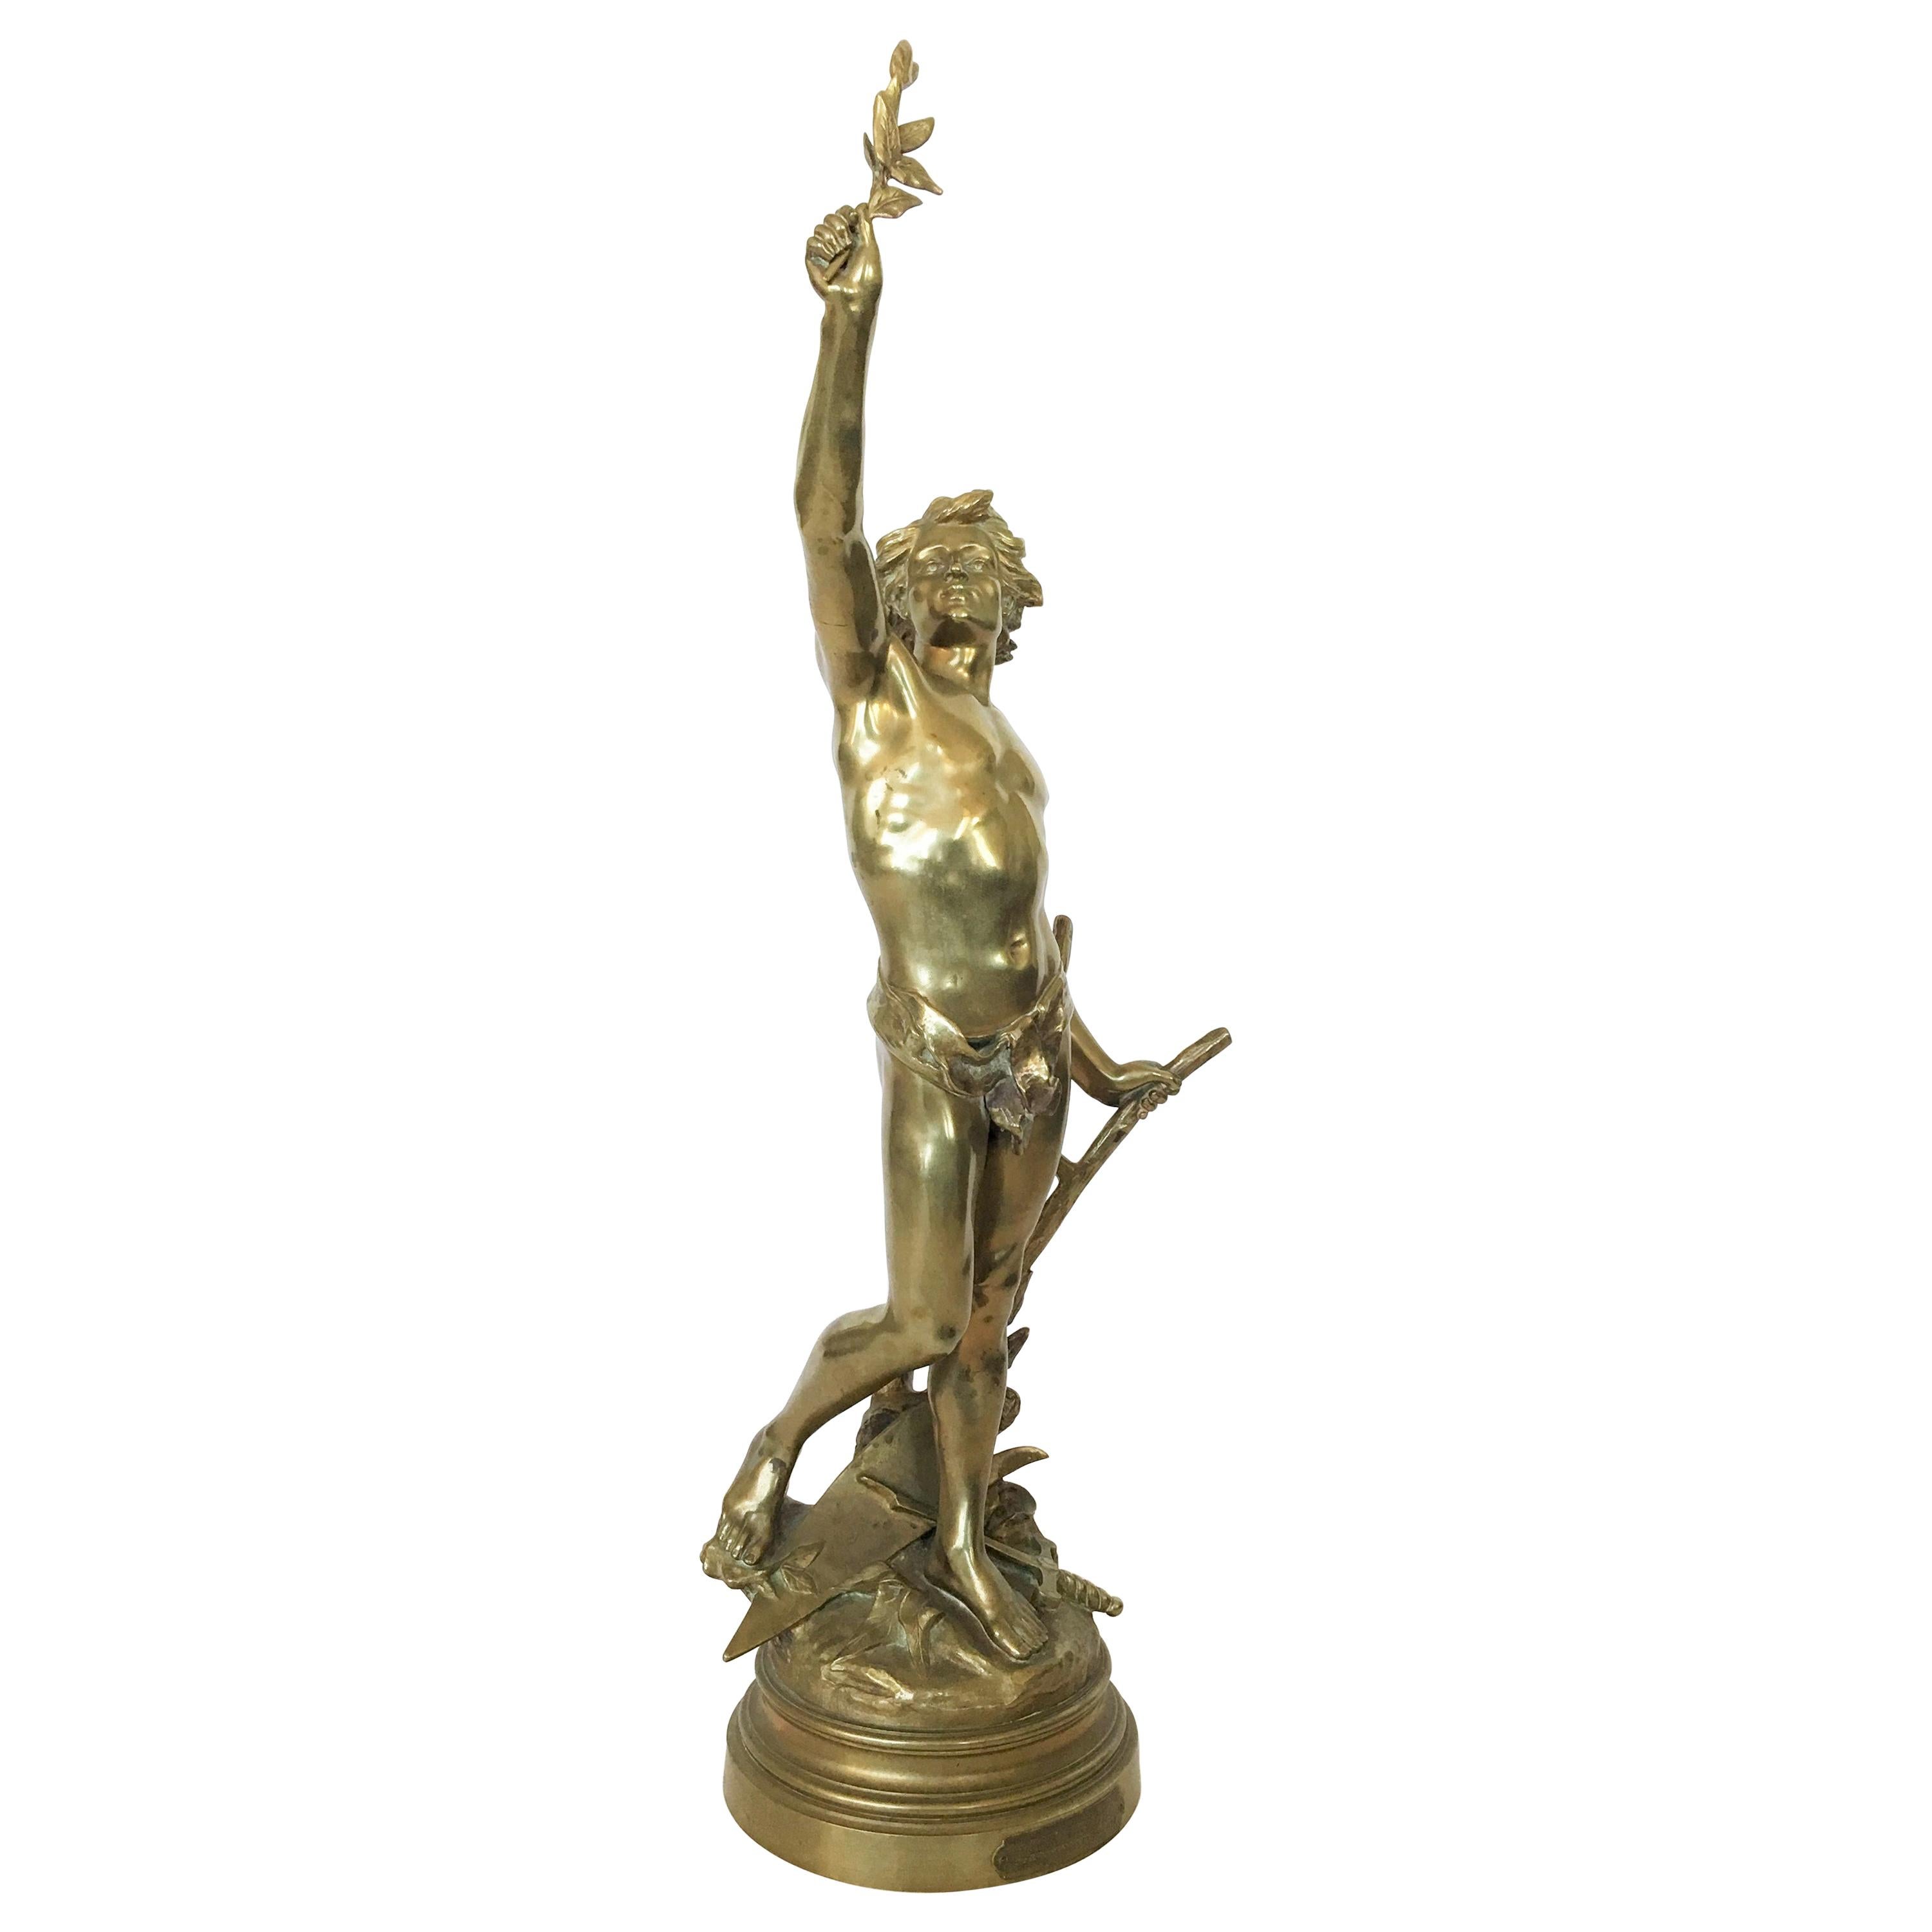 Patinierte und vergoldete Bronze „Paxarbeit“ von Edouard Drouot aus dem 19. Jahrhundert